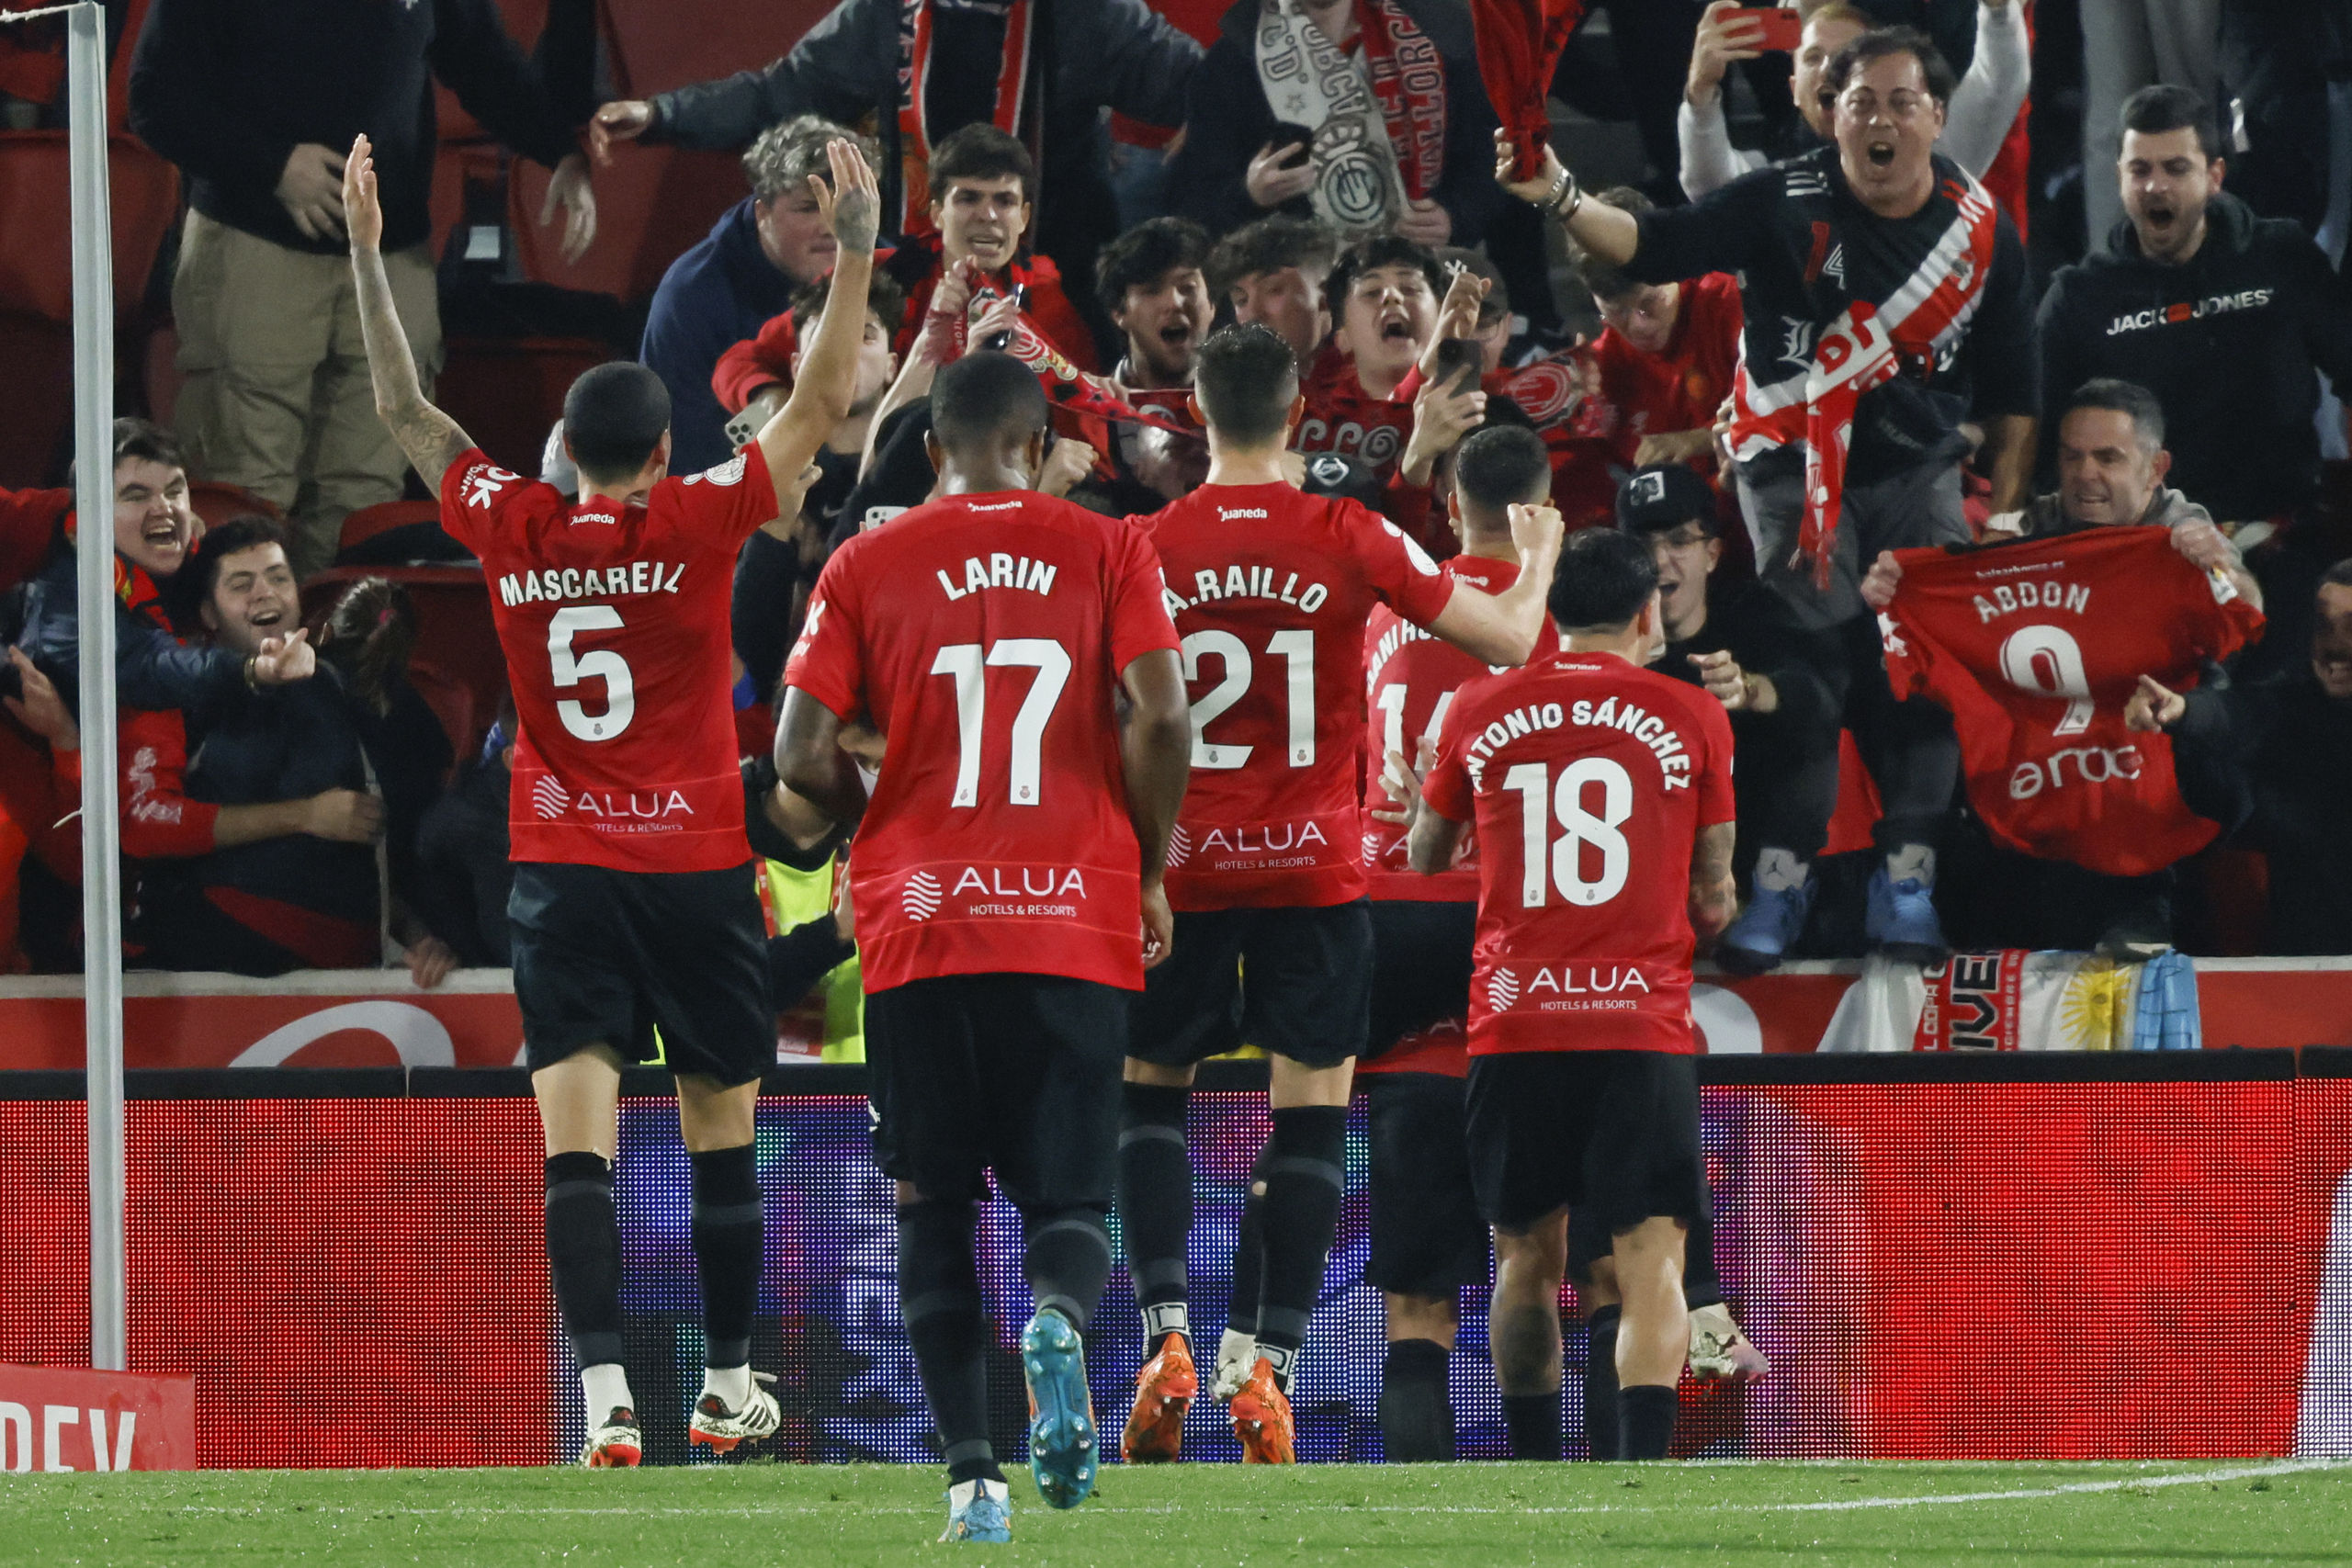 El Mallorca elimina al Girona en cuartos de la Copa del Rey (3-2)